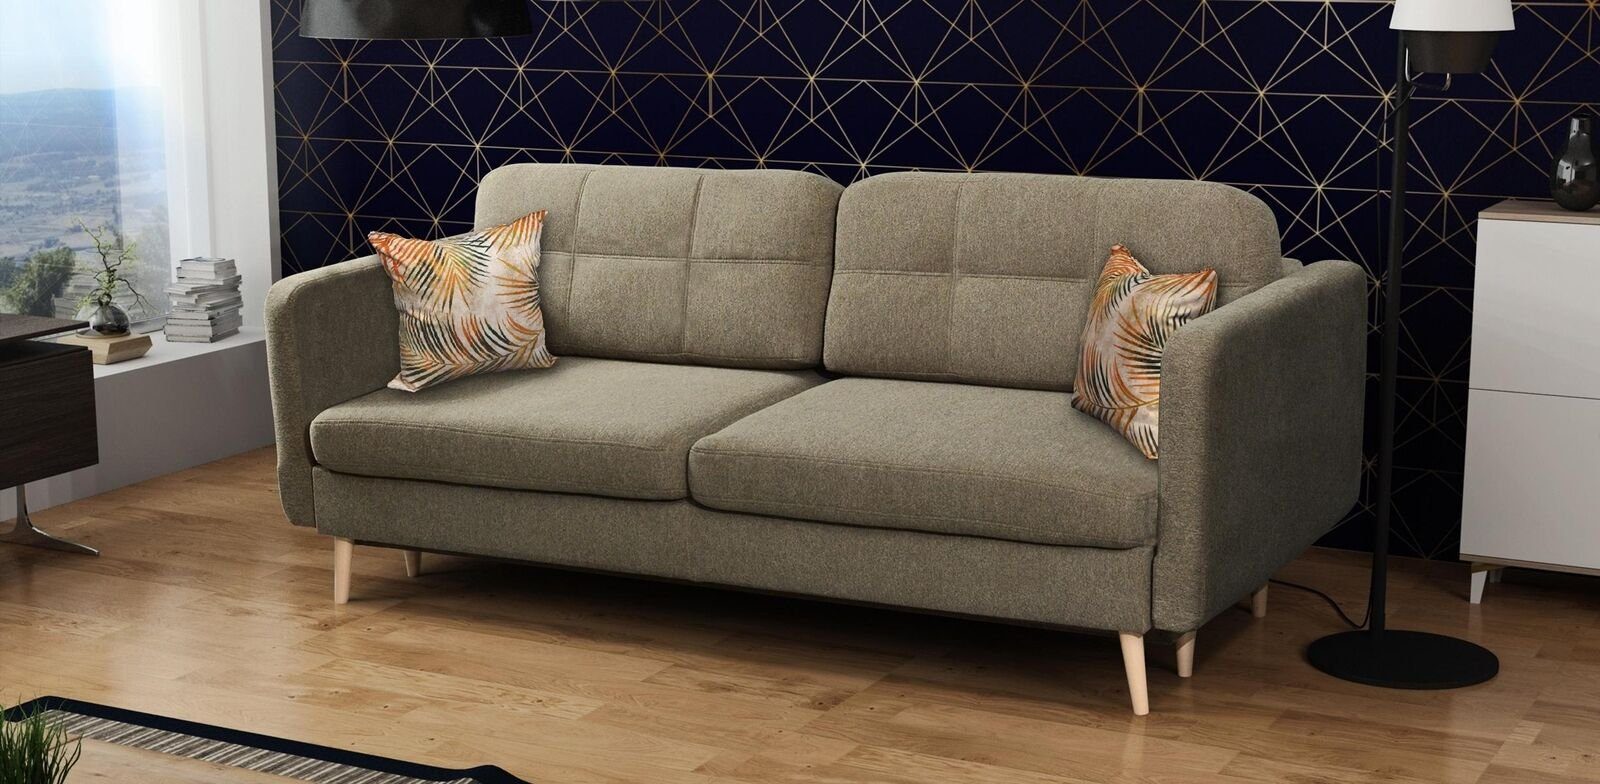 Textil Braun JVmoebel Sitzer Blaue Luxus Sofa 3 Schlafsofa Sofa, Polster Möbel Designer